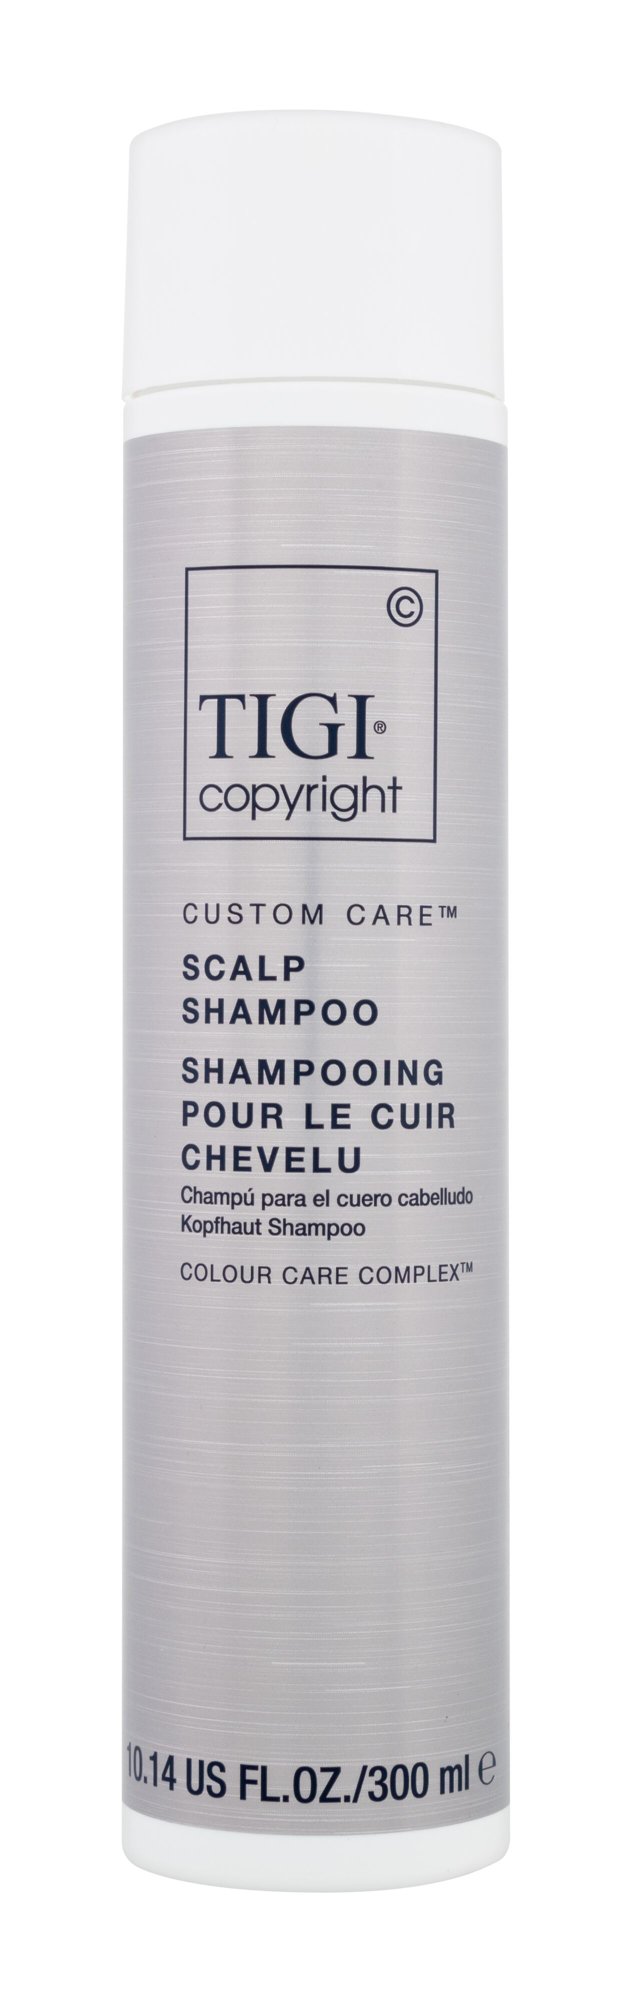 Tigi Copyright Custom Care Scalp Shampoo šampūnas